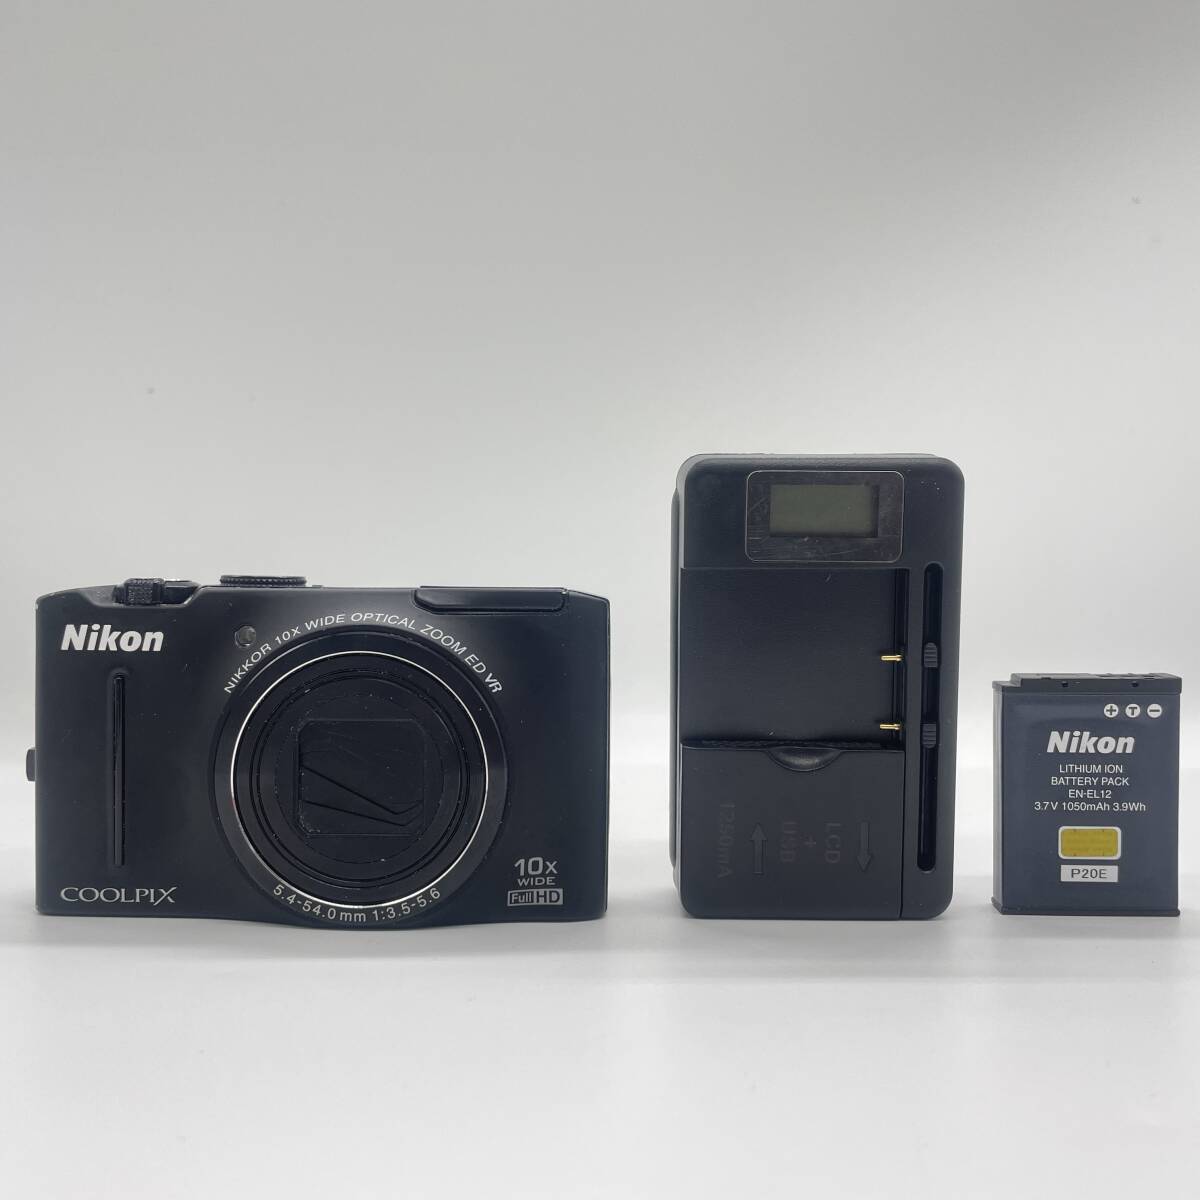  【動作確認済】Nikon coolpix S8100 BLACK コンデジ デジカメ デジタルカメラ シャッター&フラッシュ動作OKの画像1